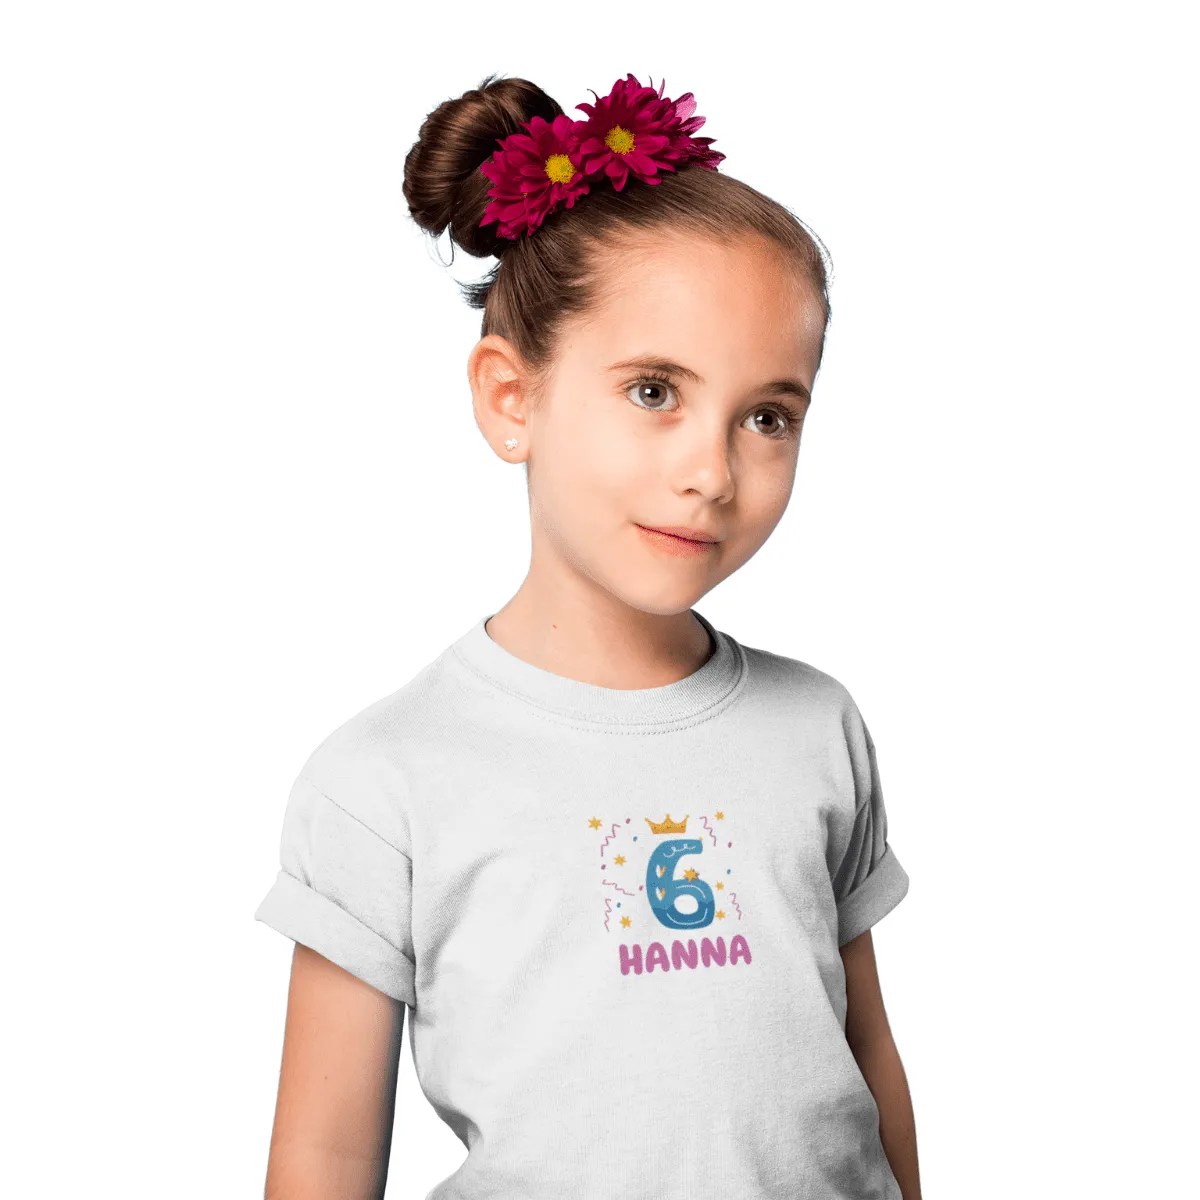 Kinder T-Shirt 6 Jahre mit Wunschname - Mädchen - Design Krone